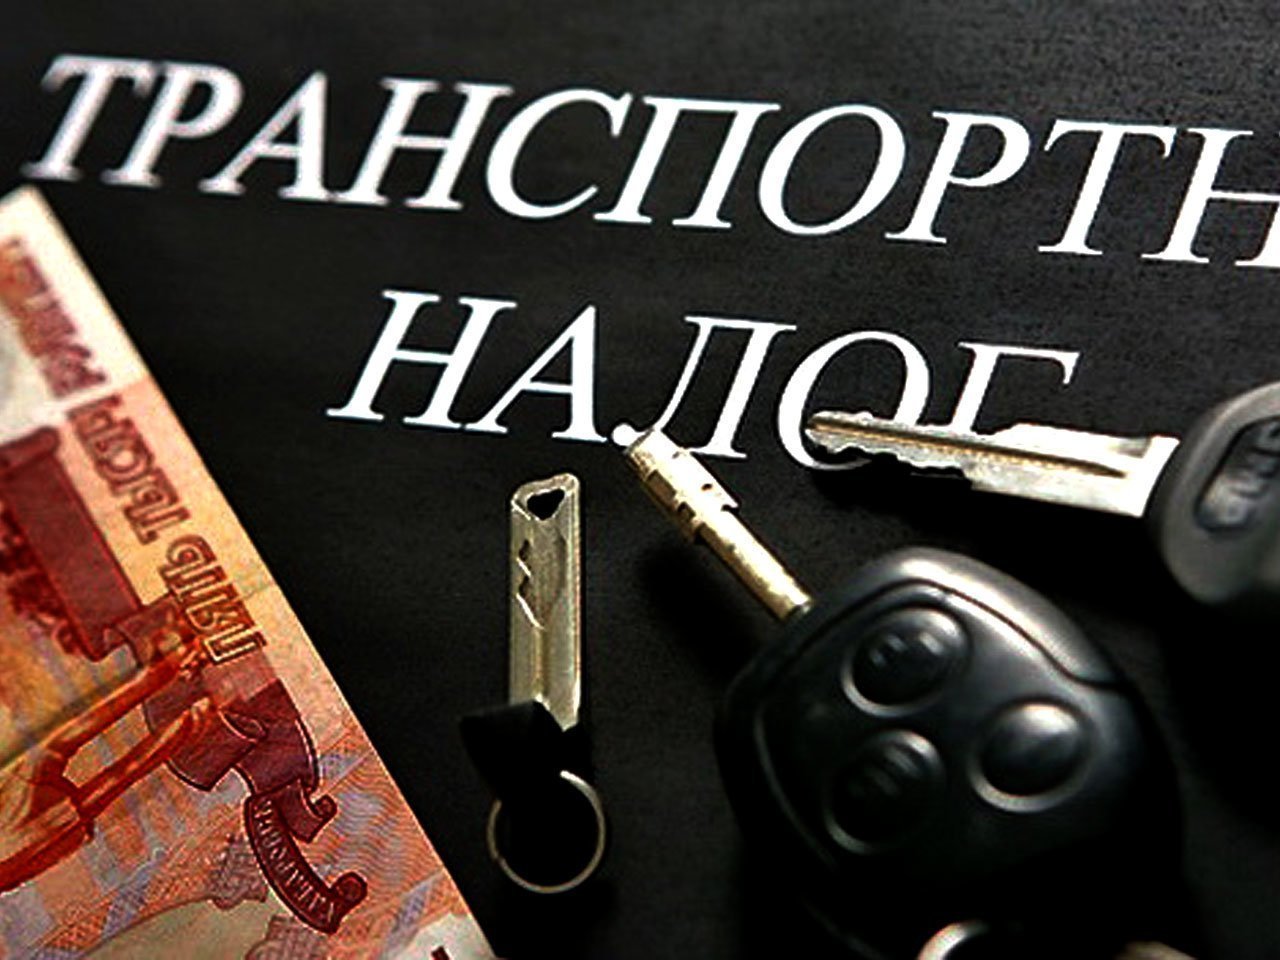 Сергей Левченко: Транспортный налог для физлиц снизят вдвое с 2020 года в Приангарье